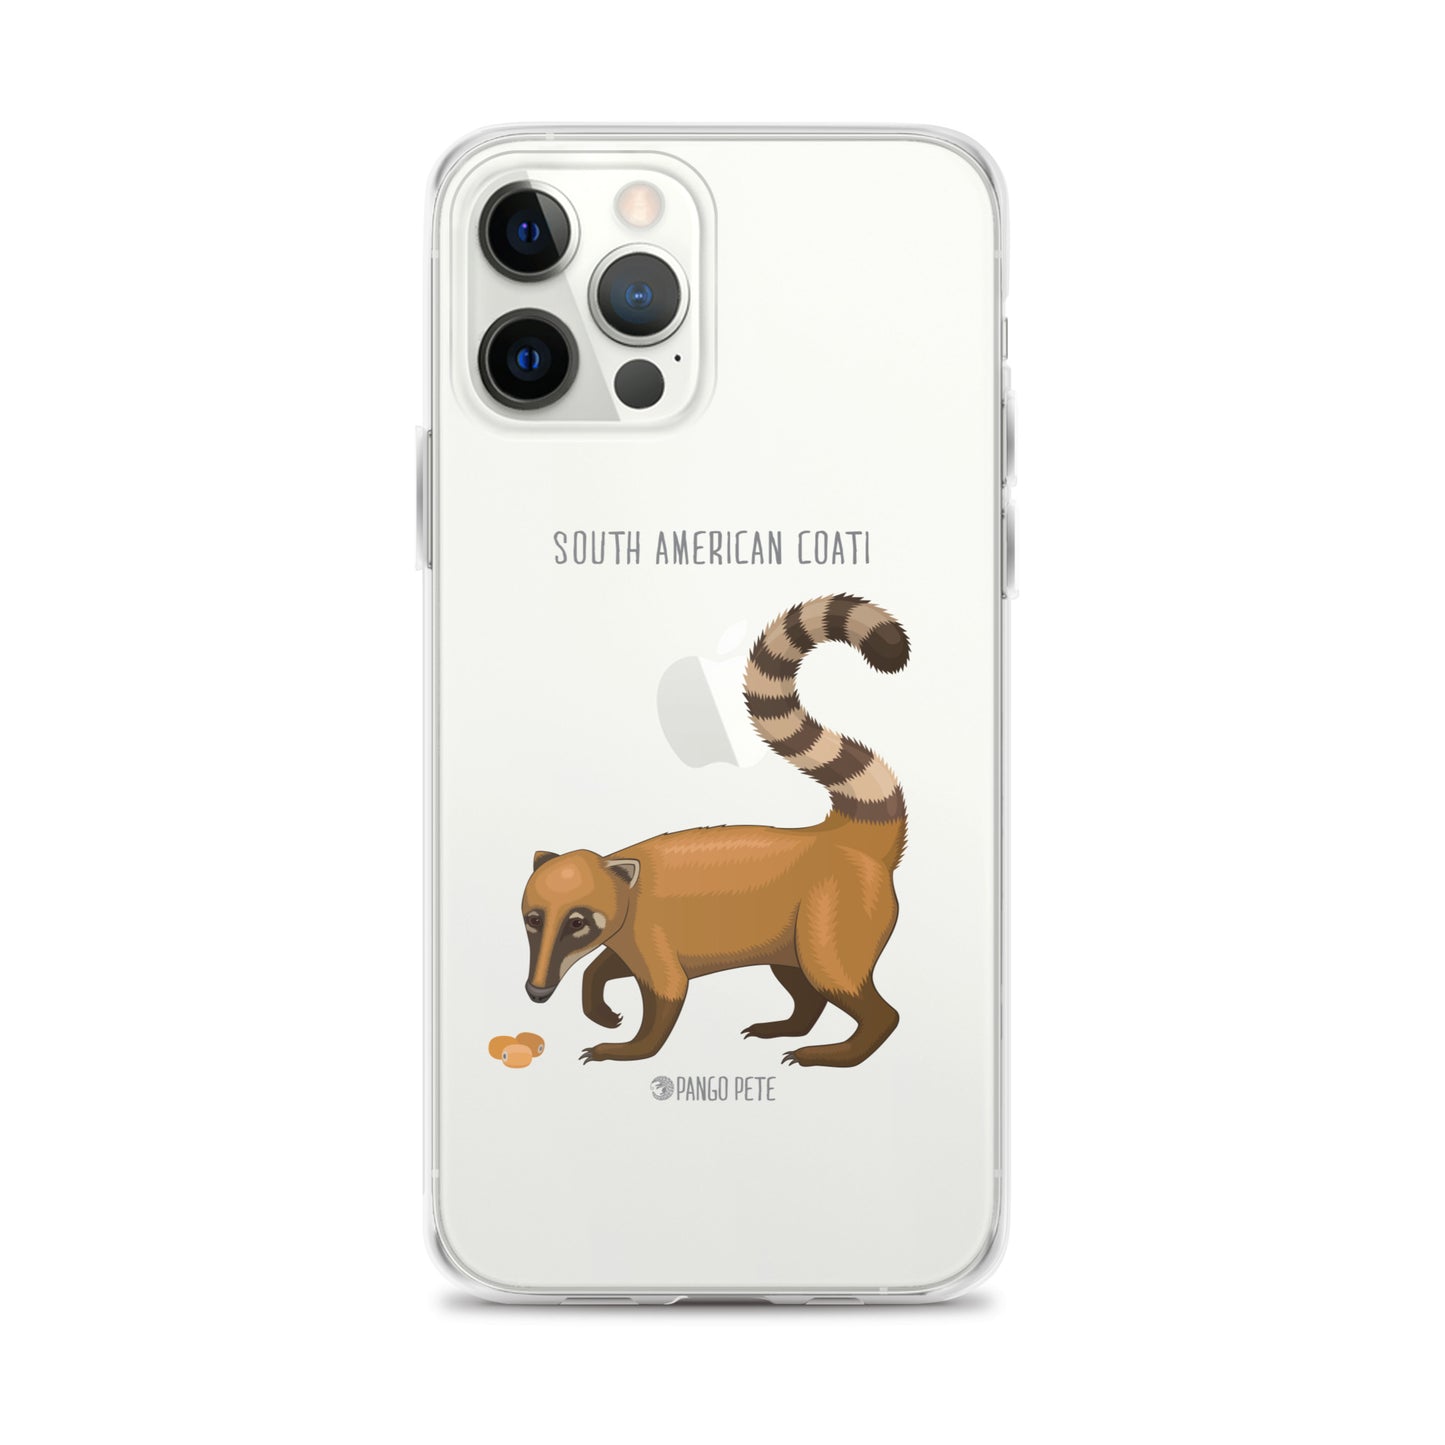 South American Coati iPhone Case